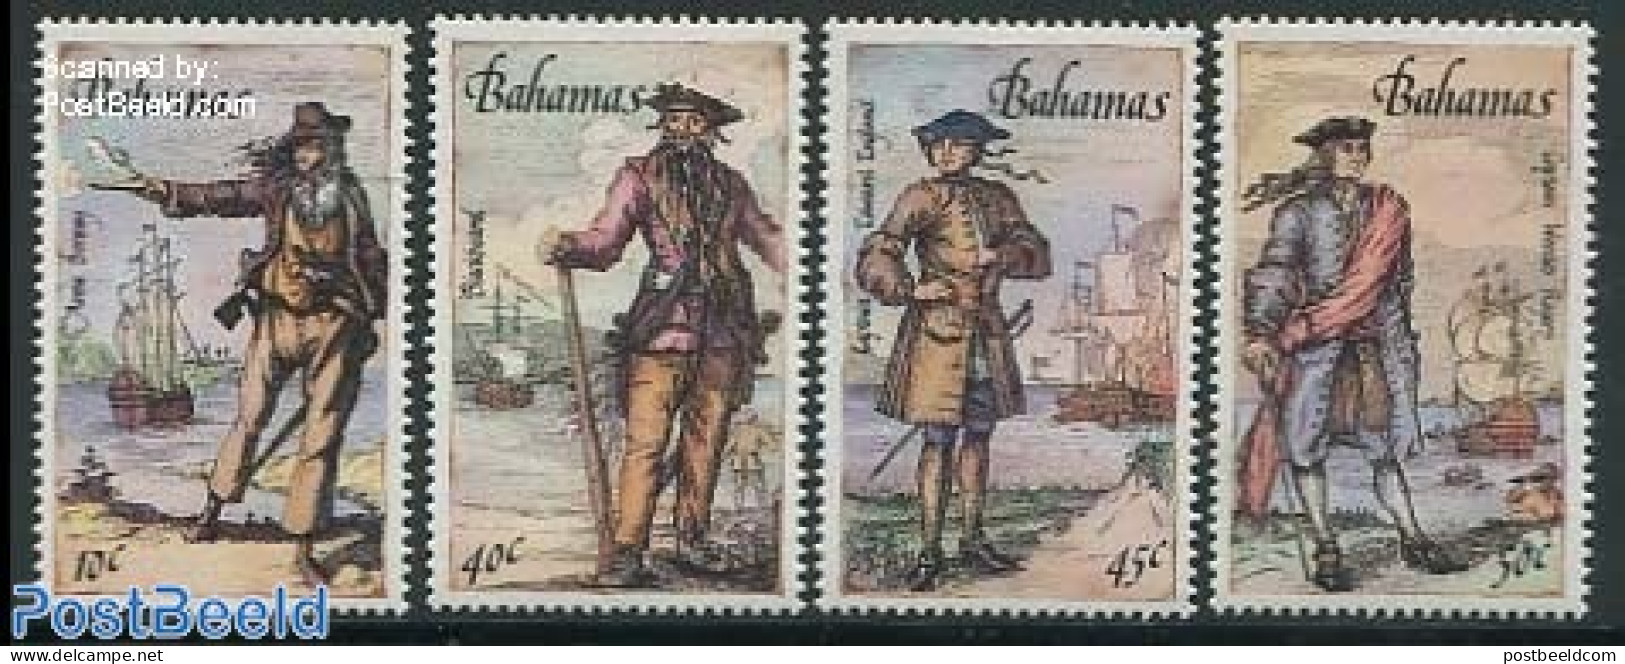 Bahamas 1987 Pirates 4v, Mint NH, Transport - Ships And Boats - Art - Paintings - Ships